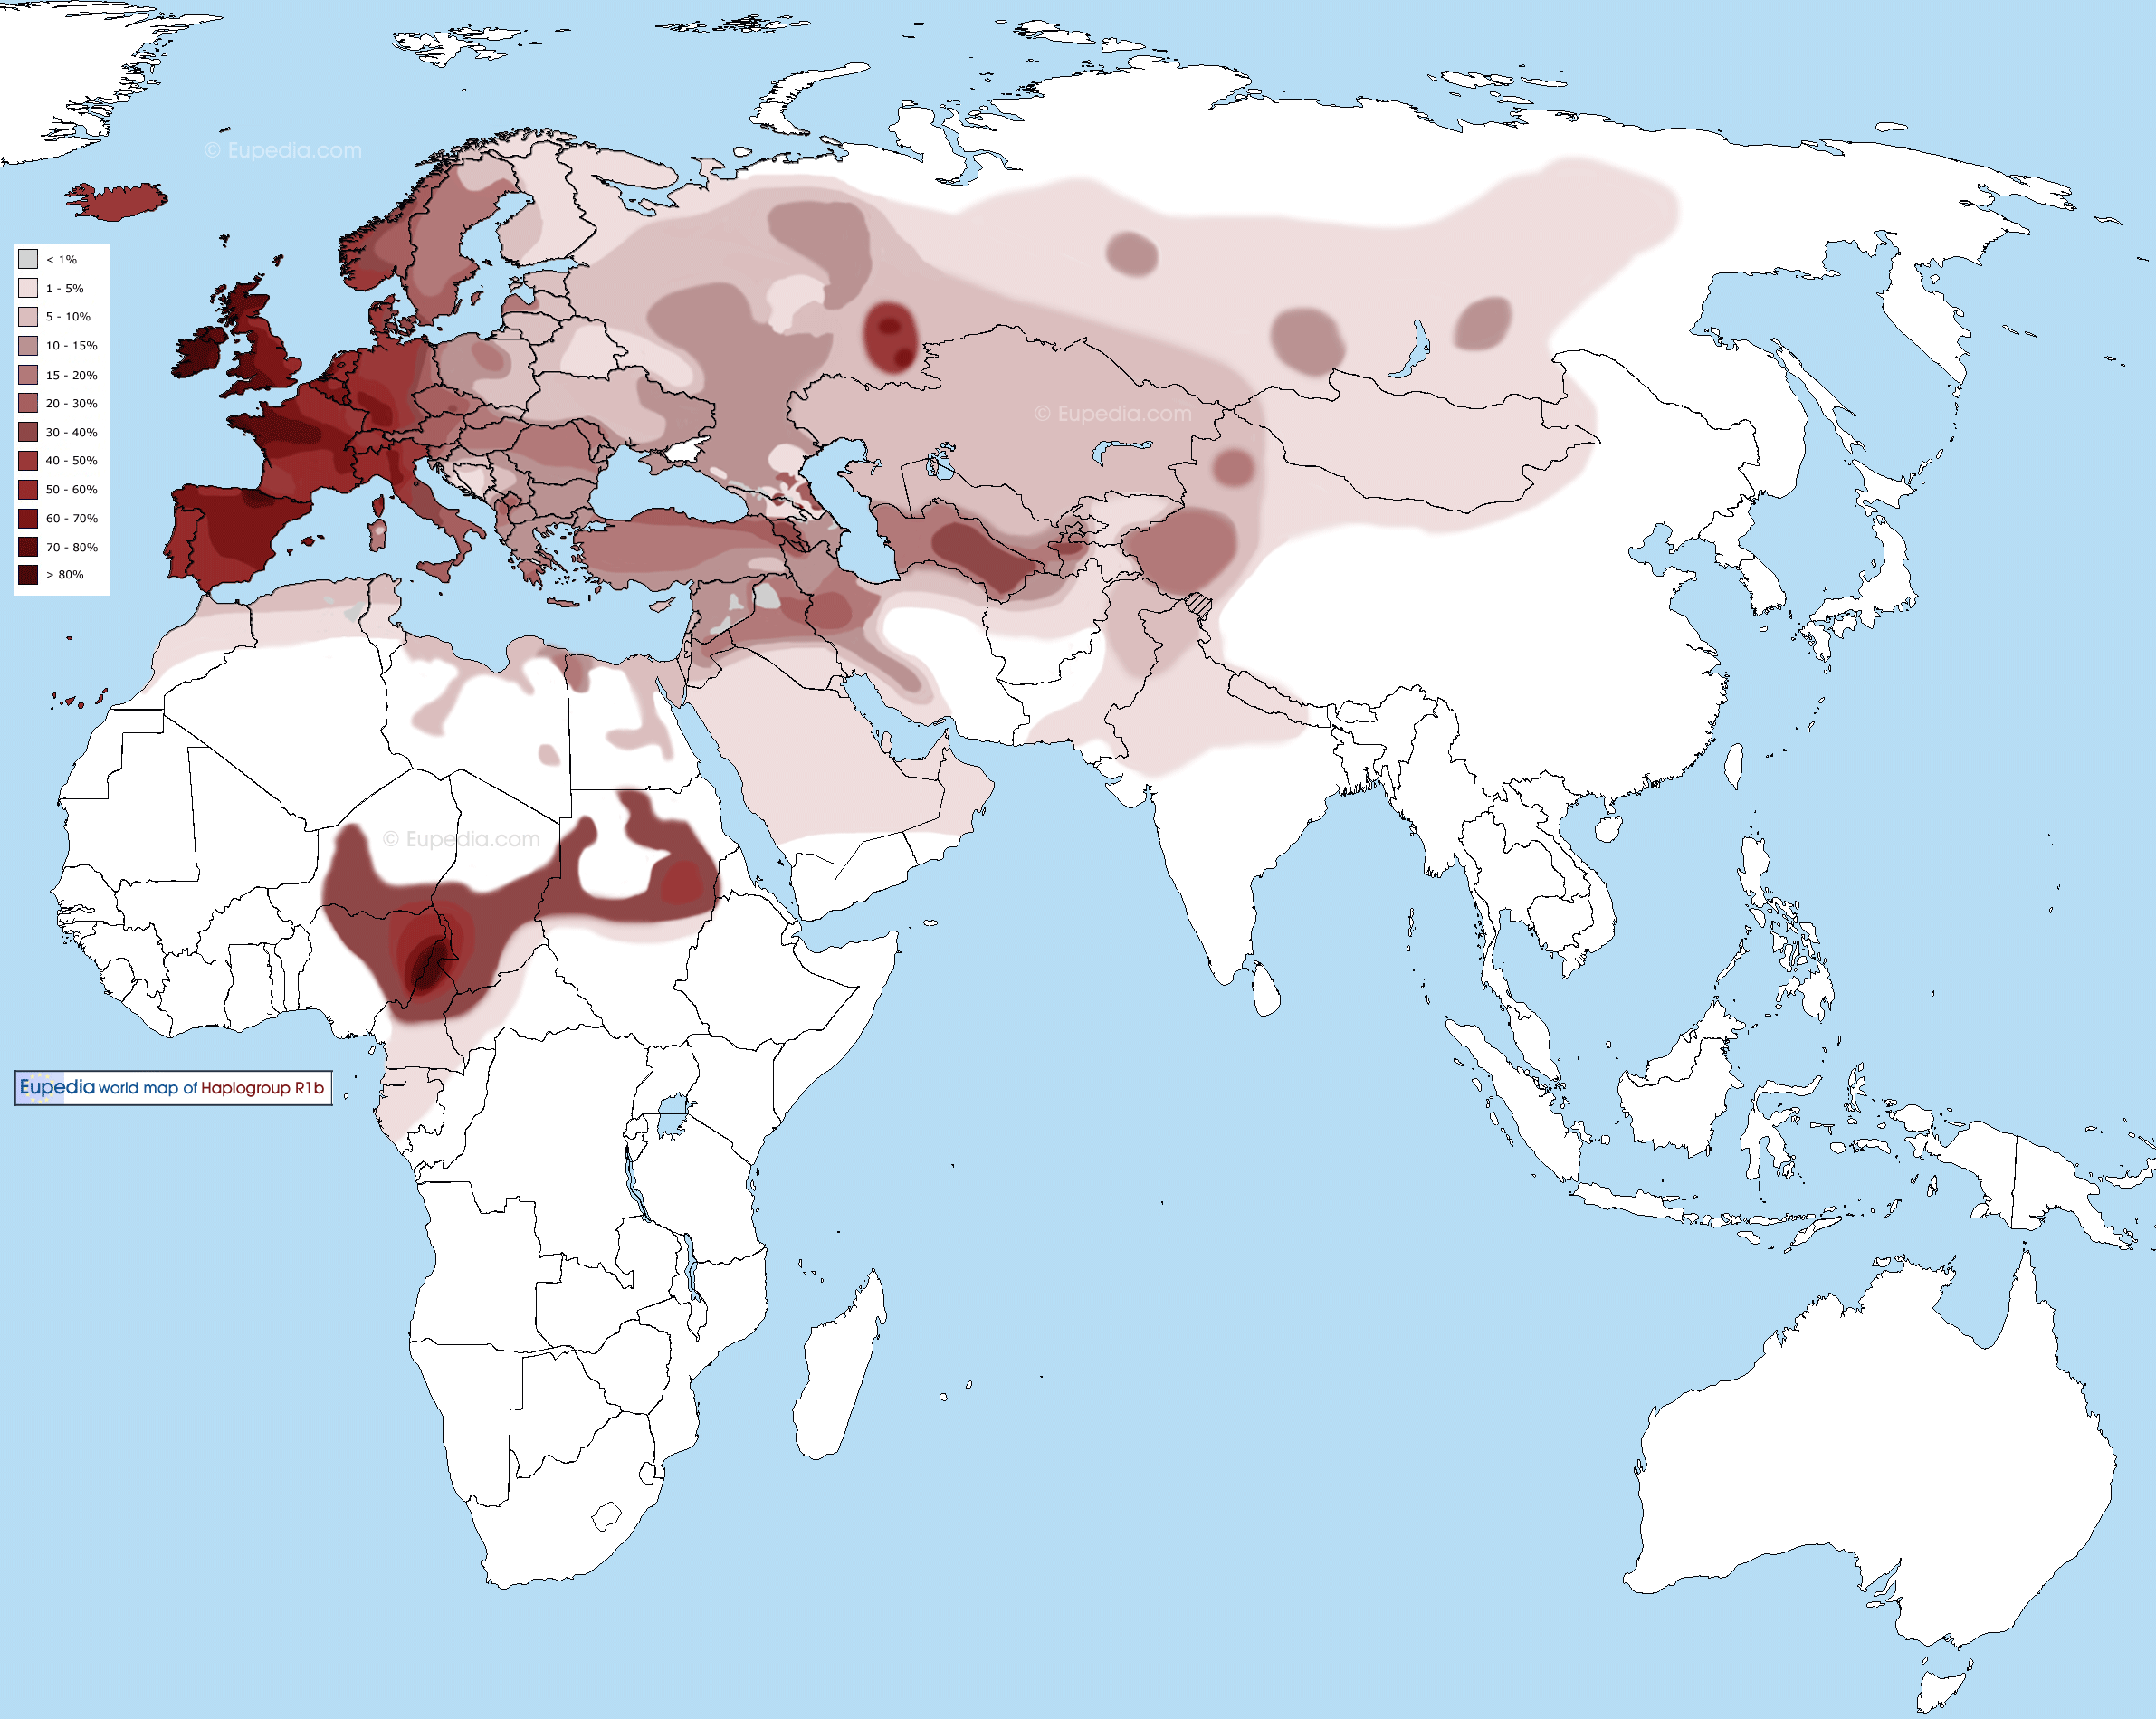 Distribuzione dell’aplogruppo R1b nel Vecchio Mondo (Eurasia e Africa) - Eupedia